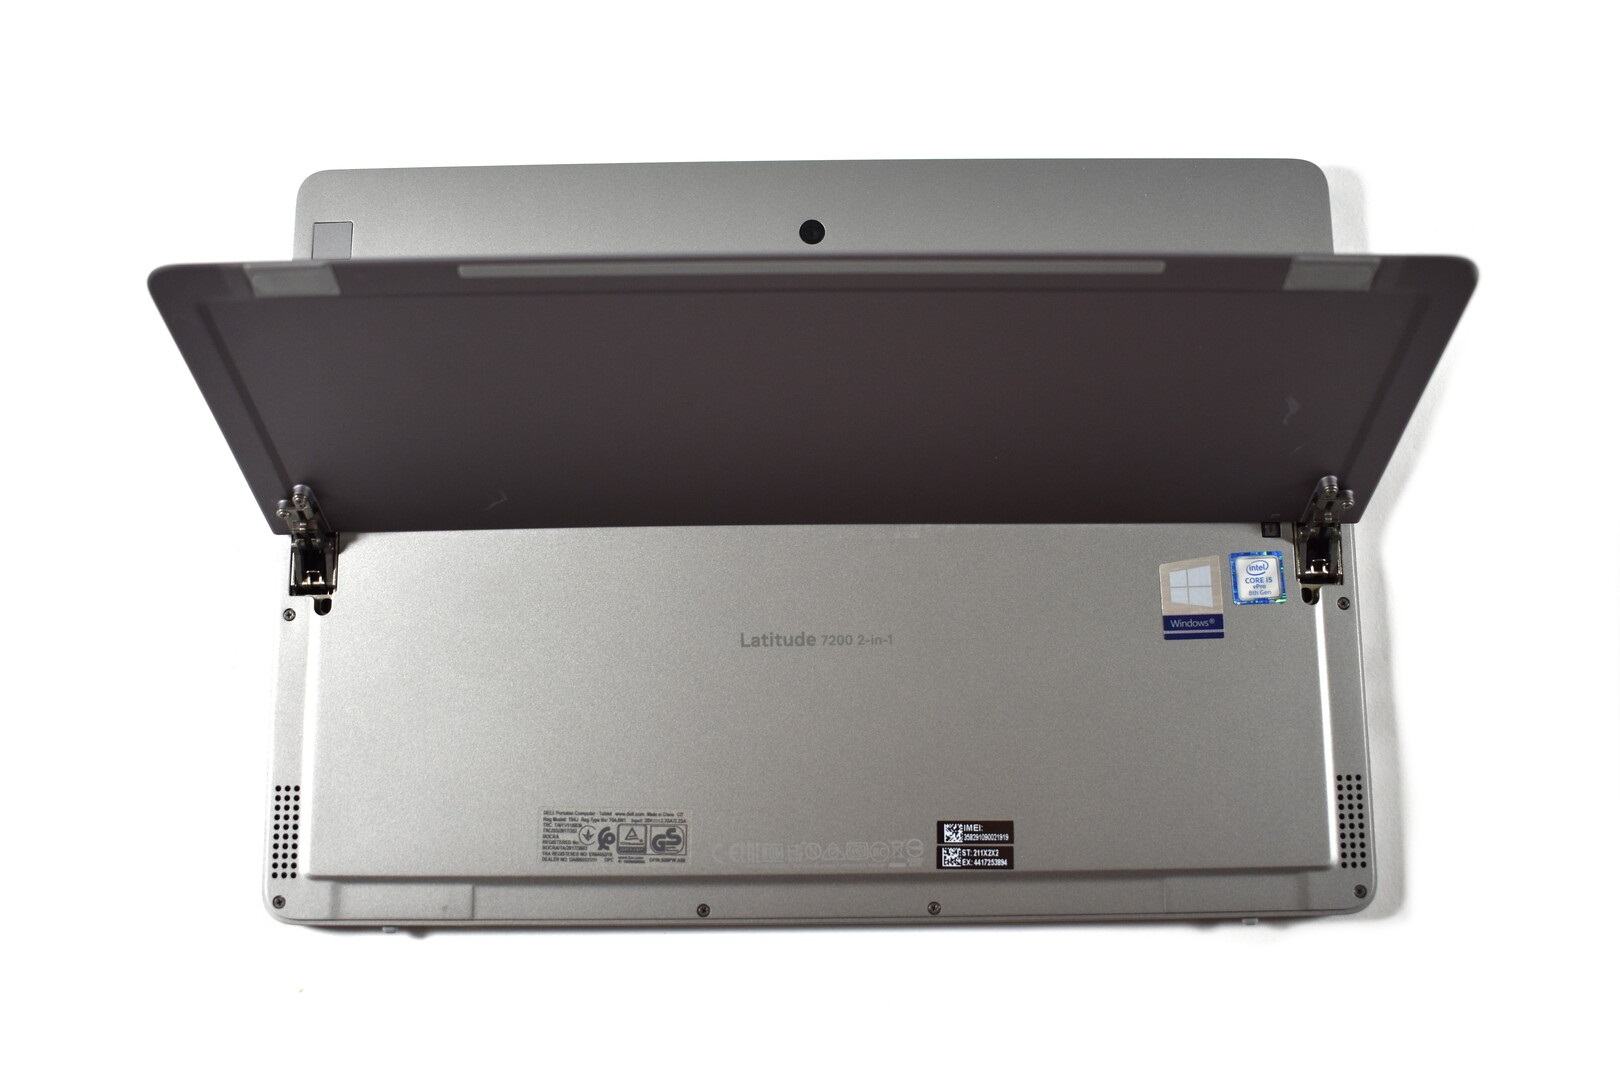 Đánh giá Dell Latitude 7200 2 in 1: Một chiếc Laptop tạo ấn tượng tốt